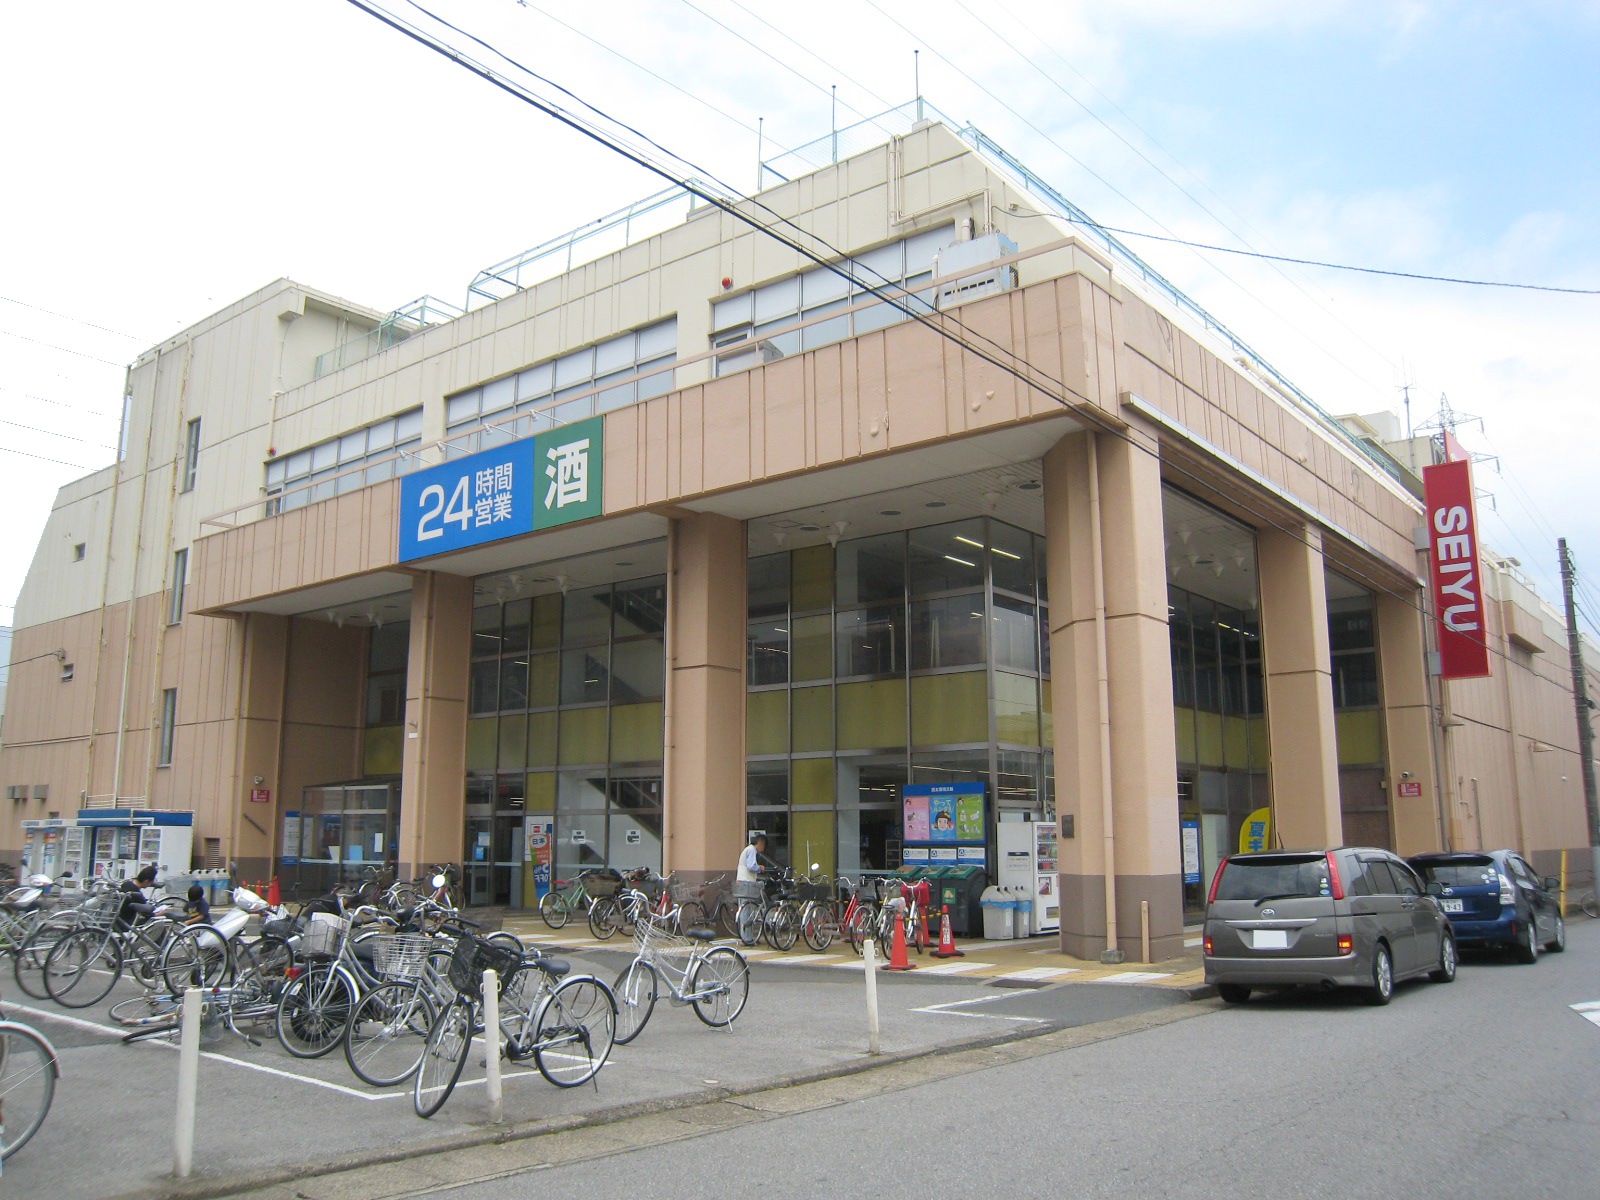 Supermarket. Seiyu Tsuga store up to (super) 899m